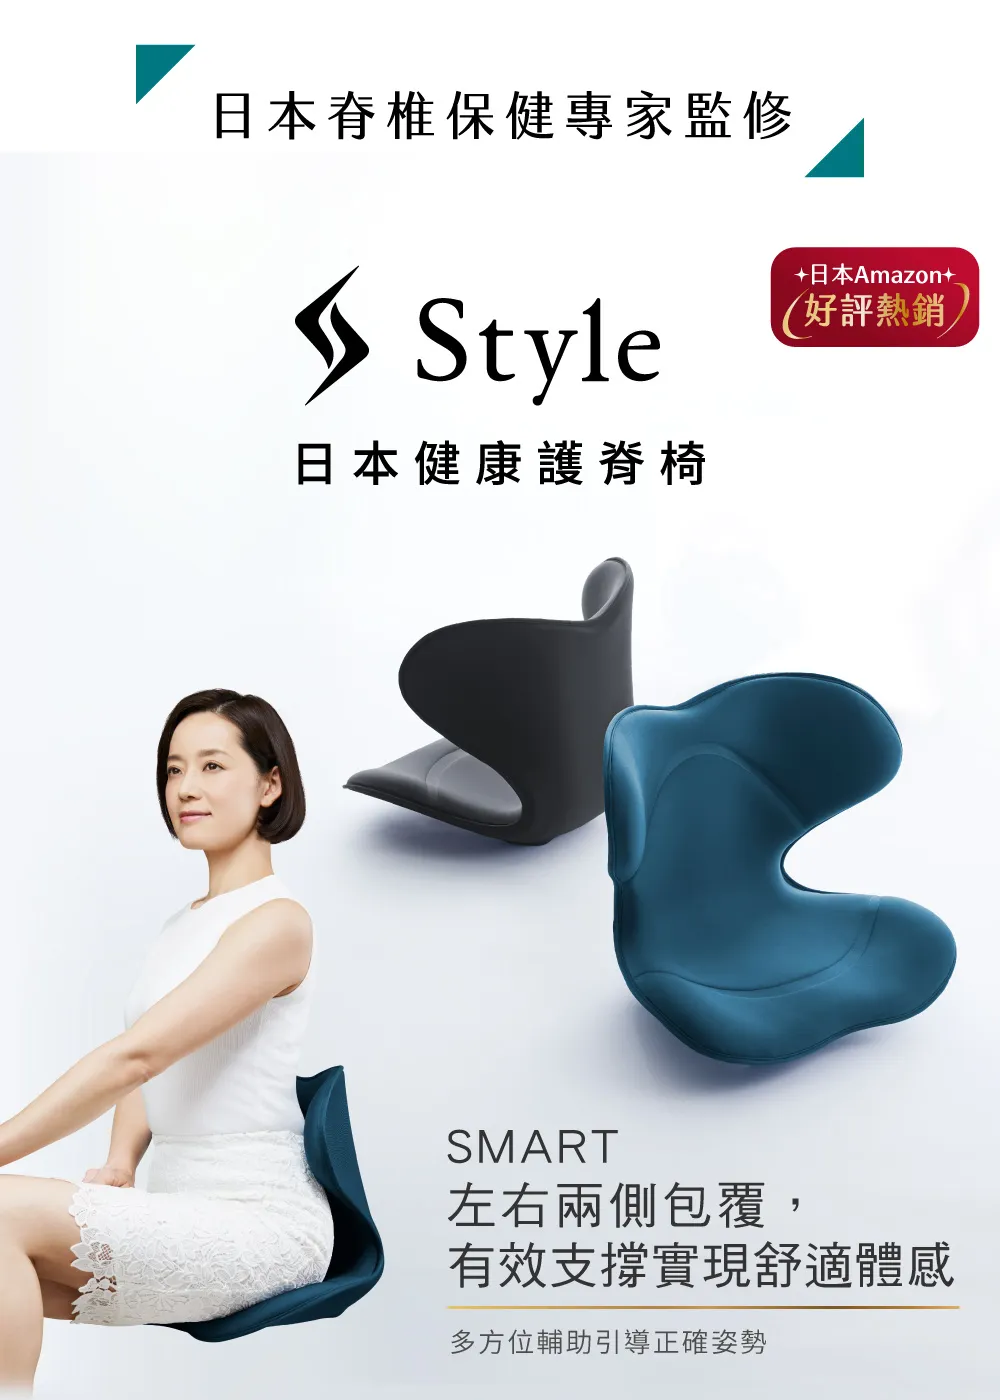 Style_EC23_Smart_01